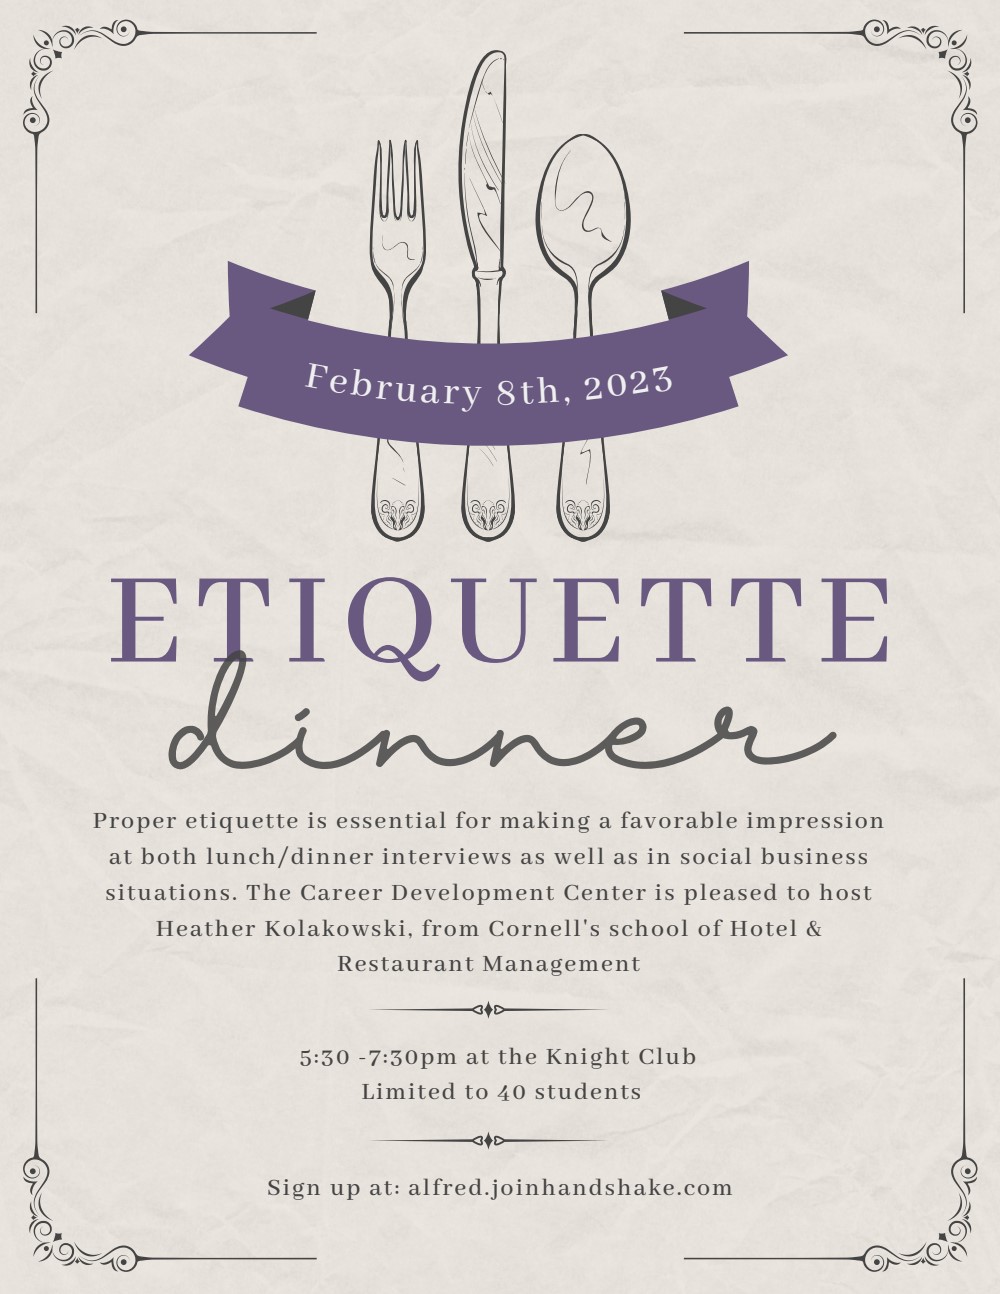 etiquette dinner flyer